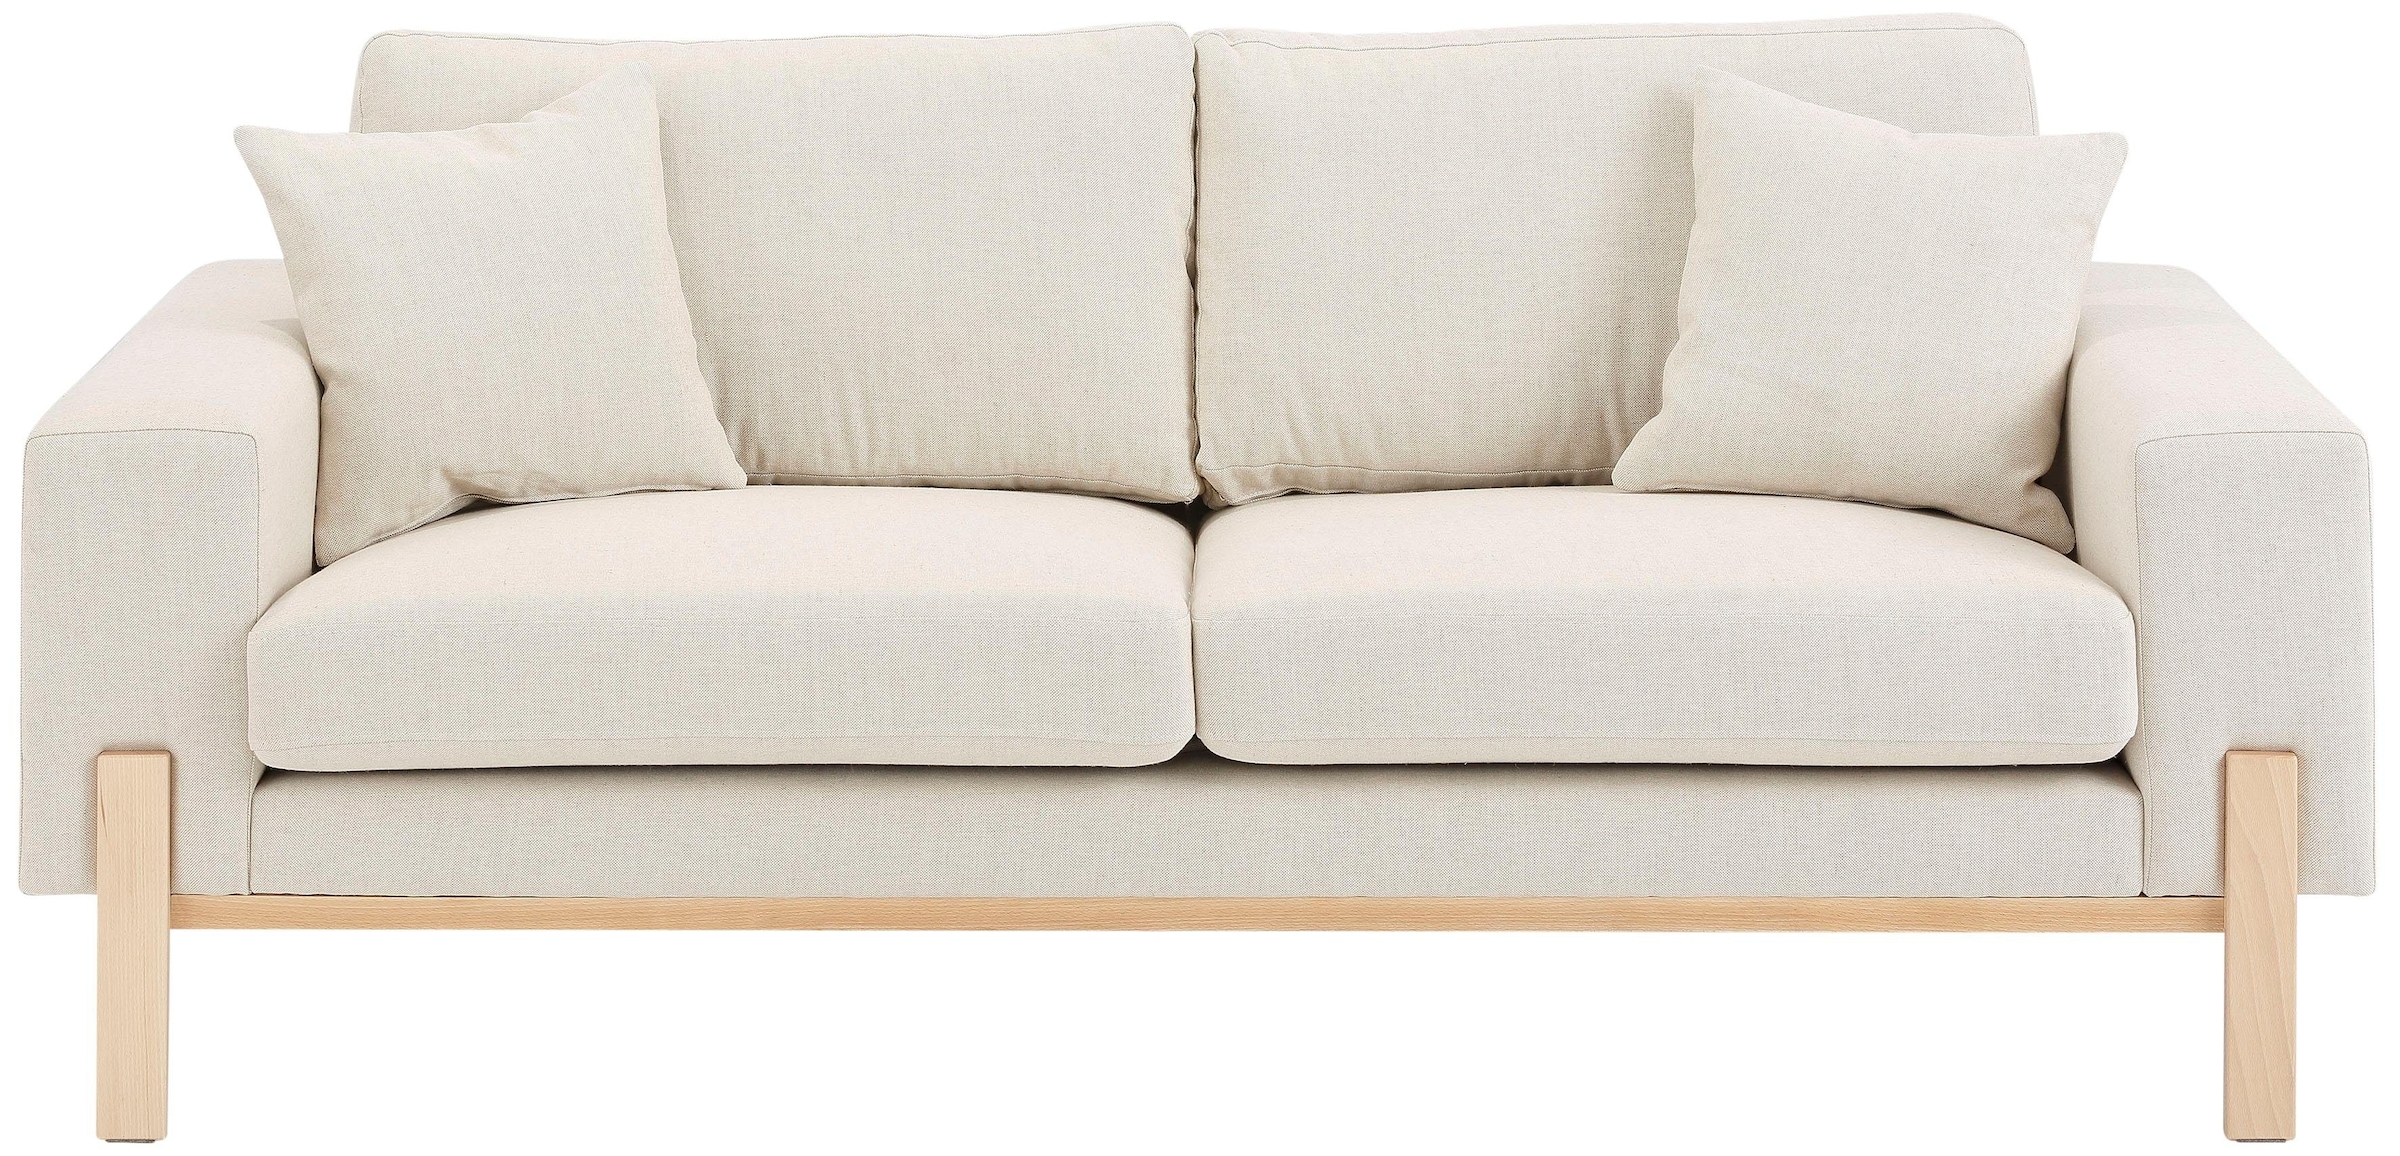 2-Sitzer »Hanne«, Verschiedene Bezugsqualitäten: Baumwolle, recyceltes Polyester